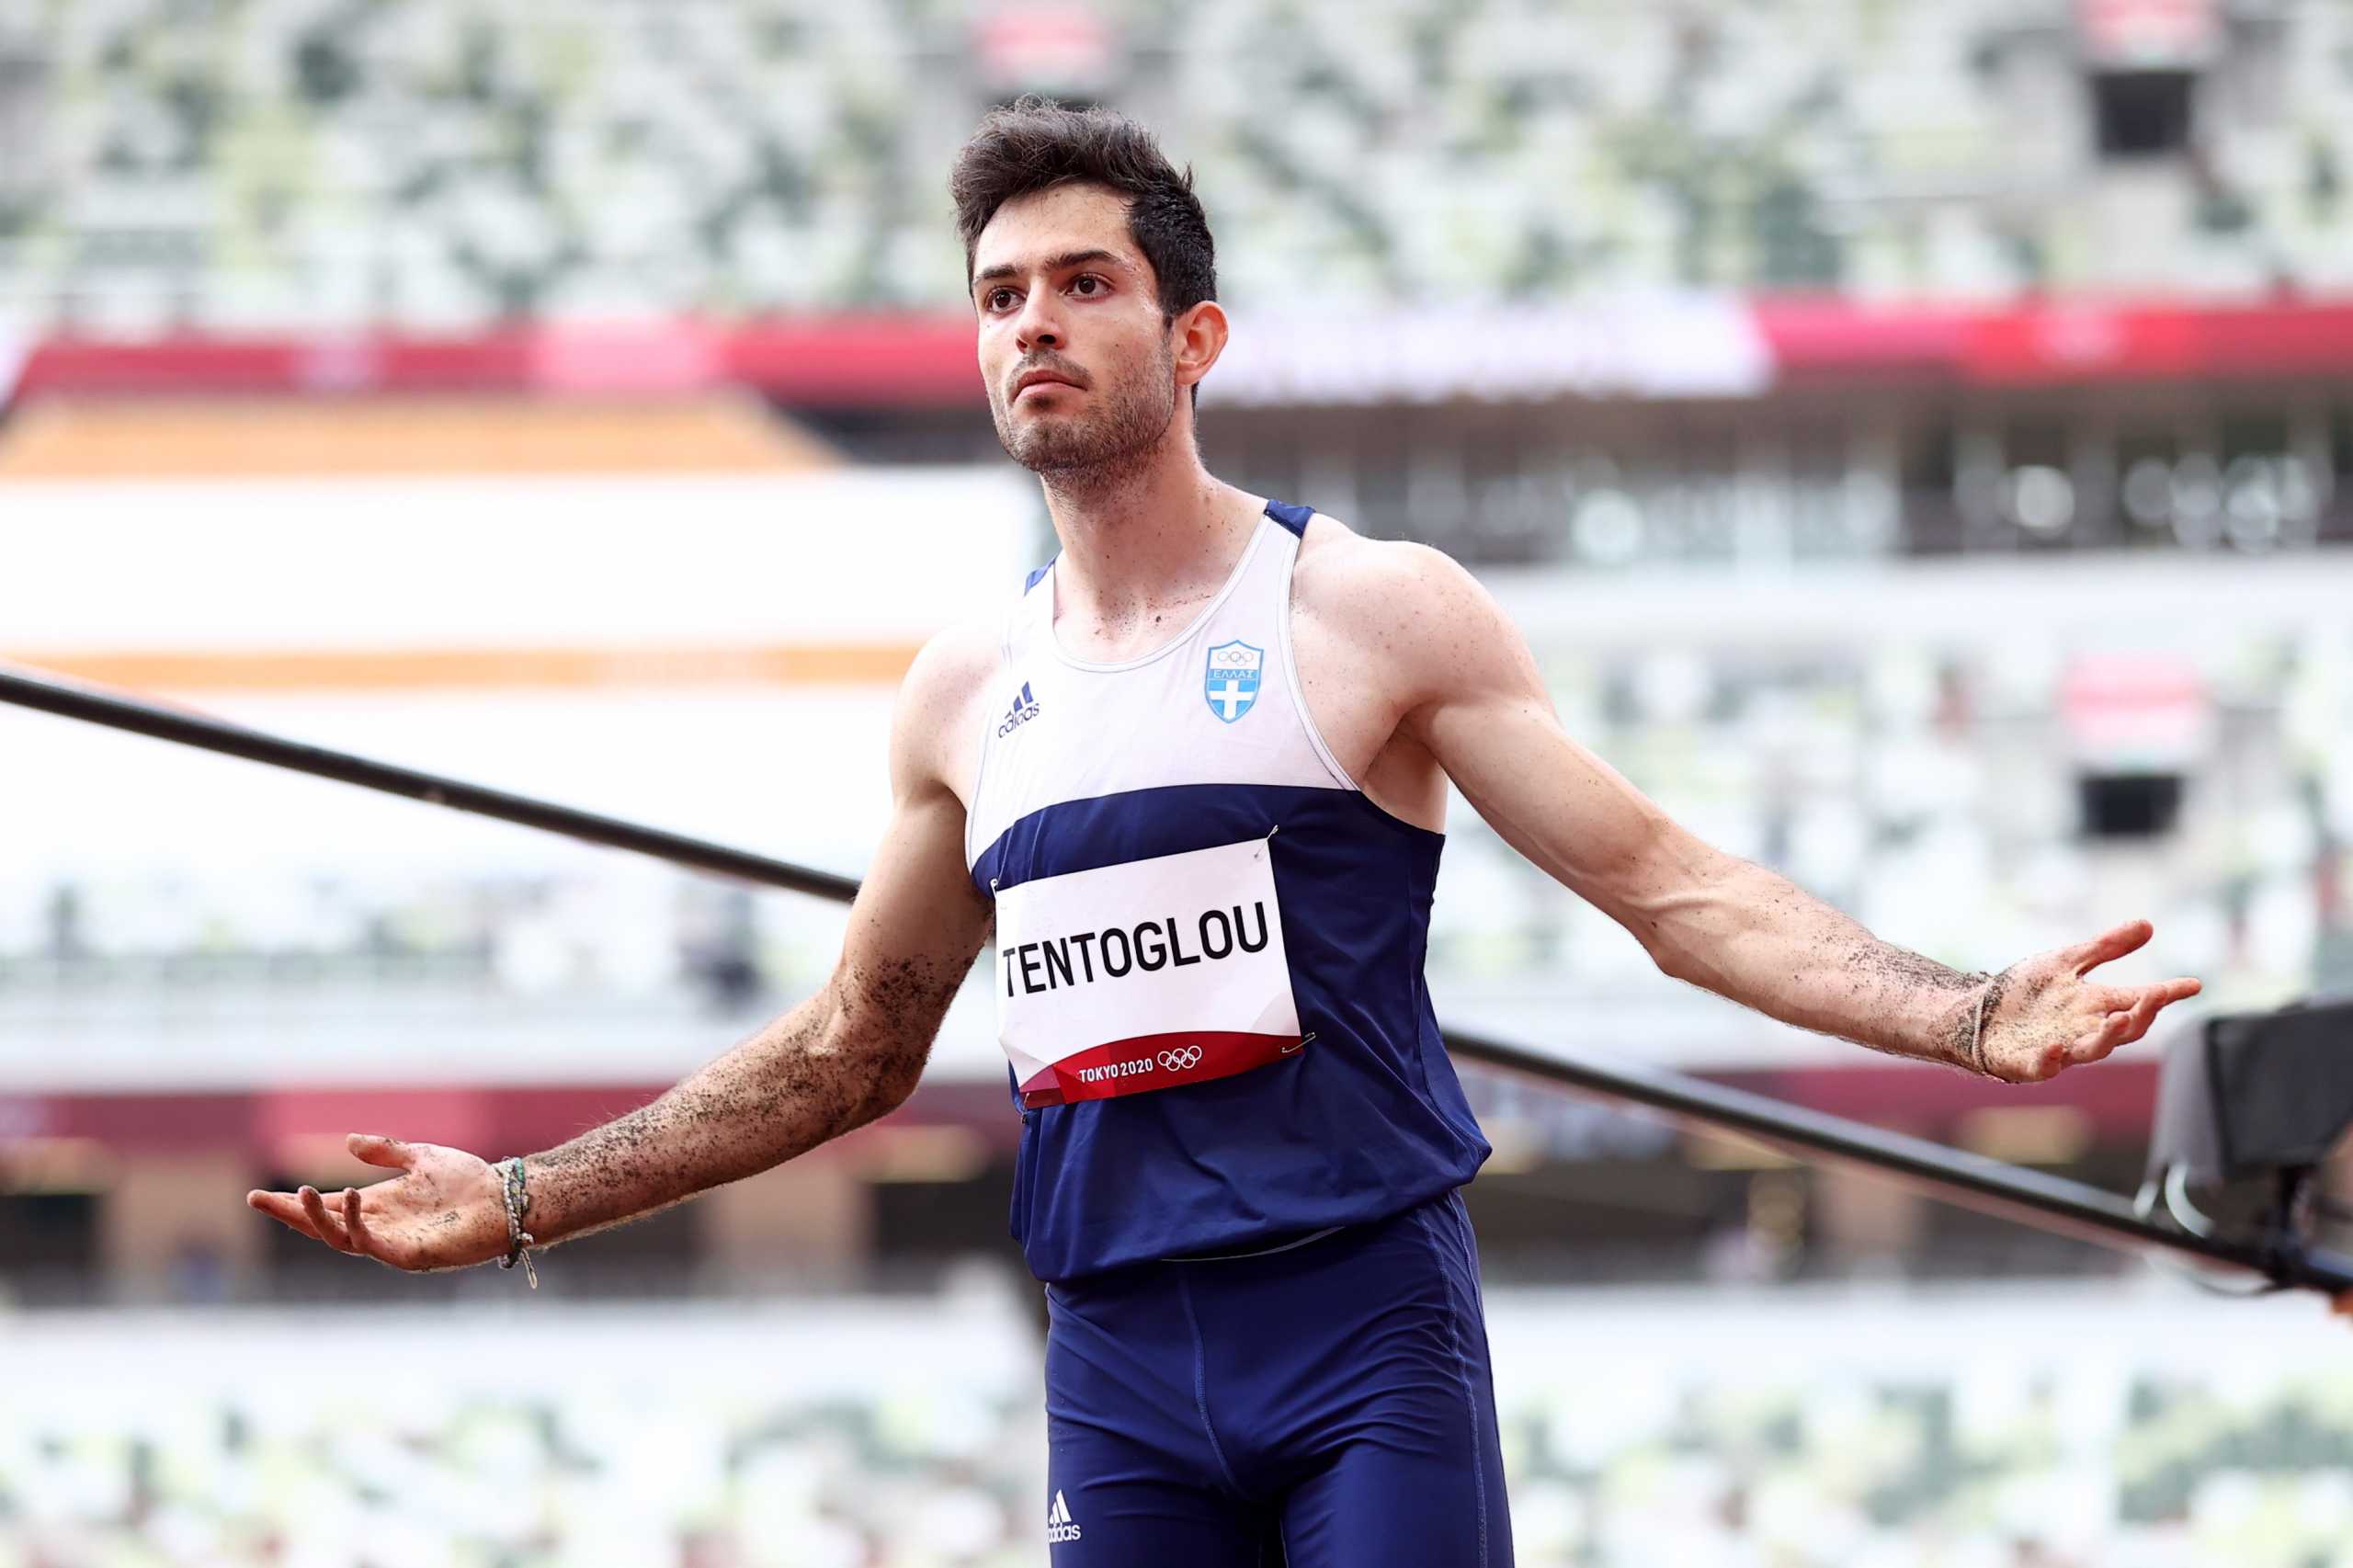 Μίλτος Τεντόγλου: Το ιστορικό άλμα που του χάρισε το χρυσό μετάλλιο στους Ολυμπιακούς Αγώνες κι η επική αντίδραση του προπονητή του